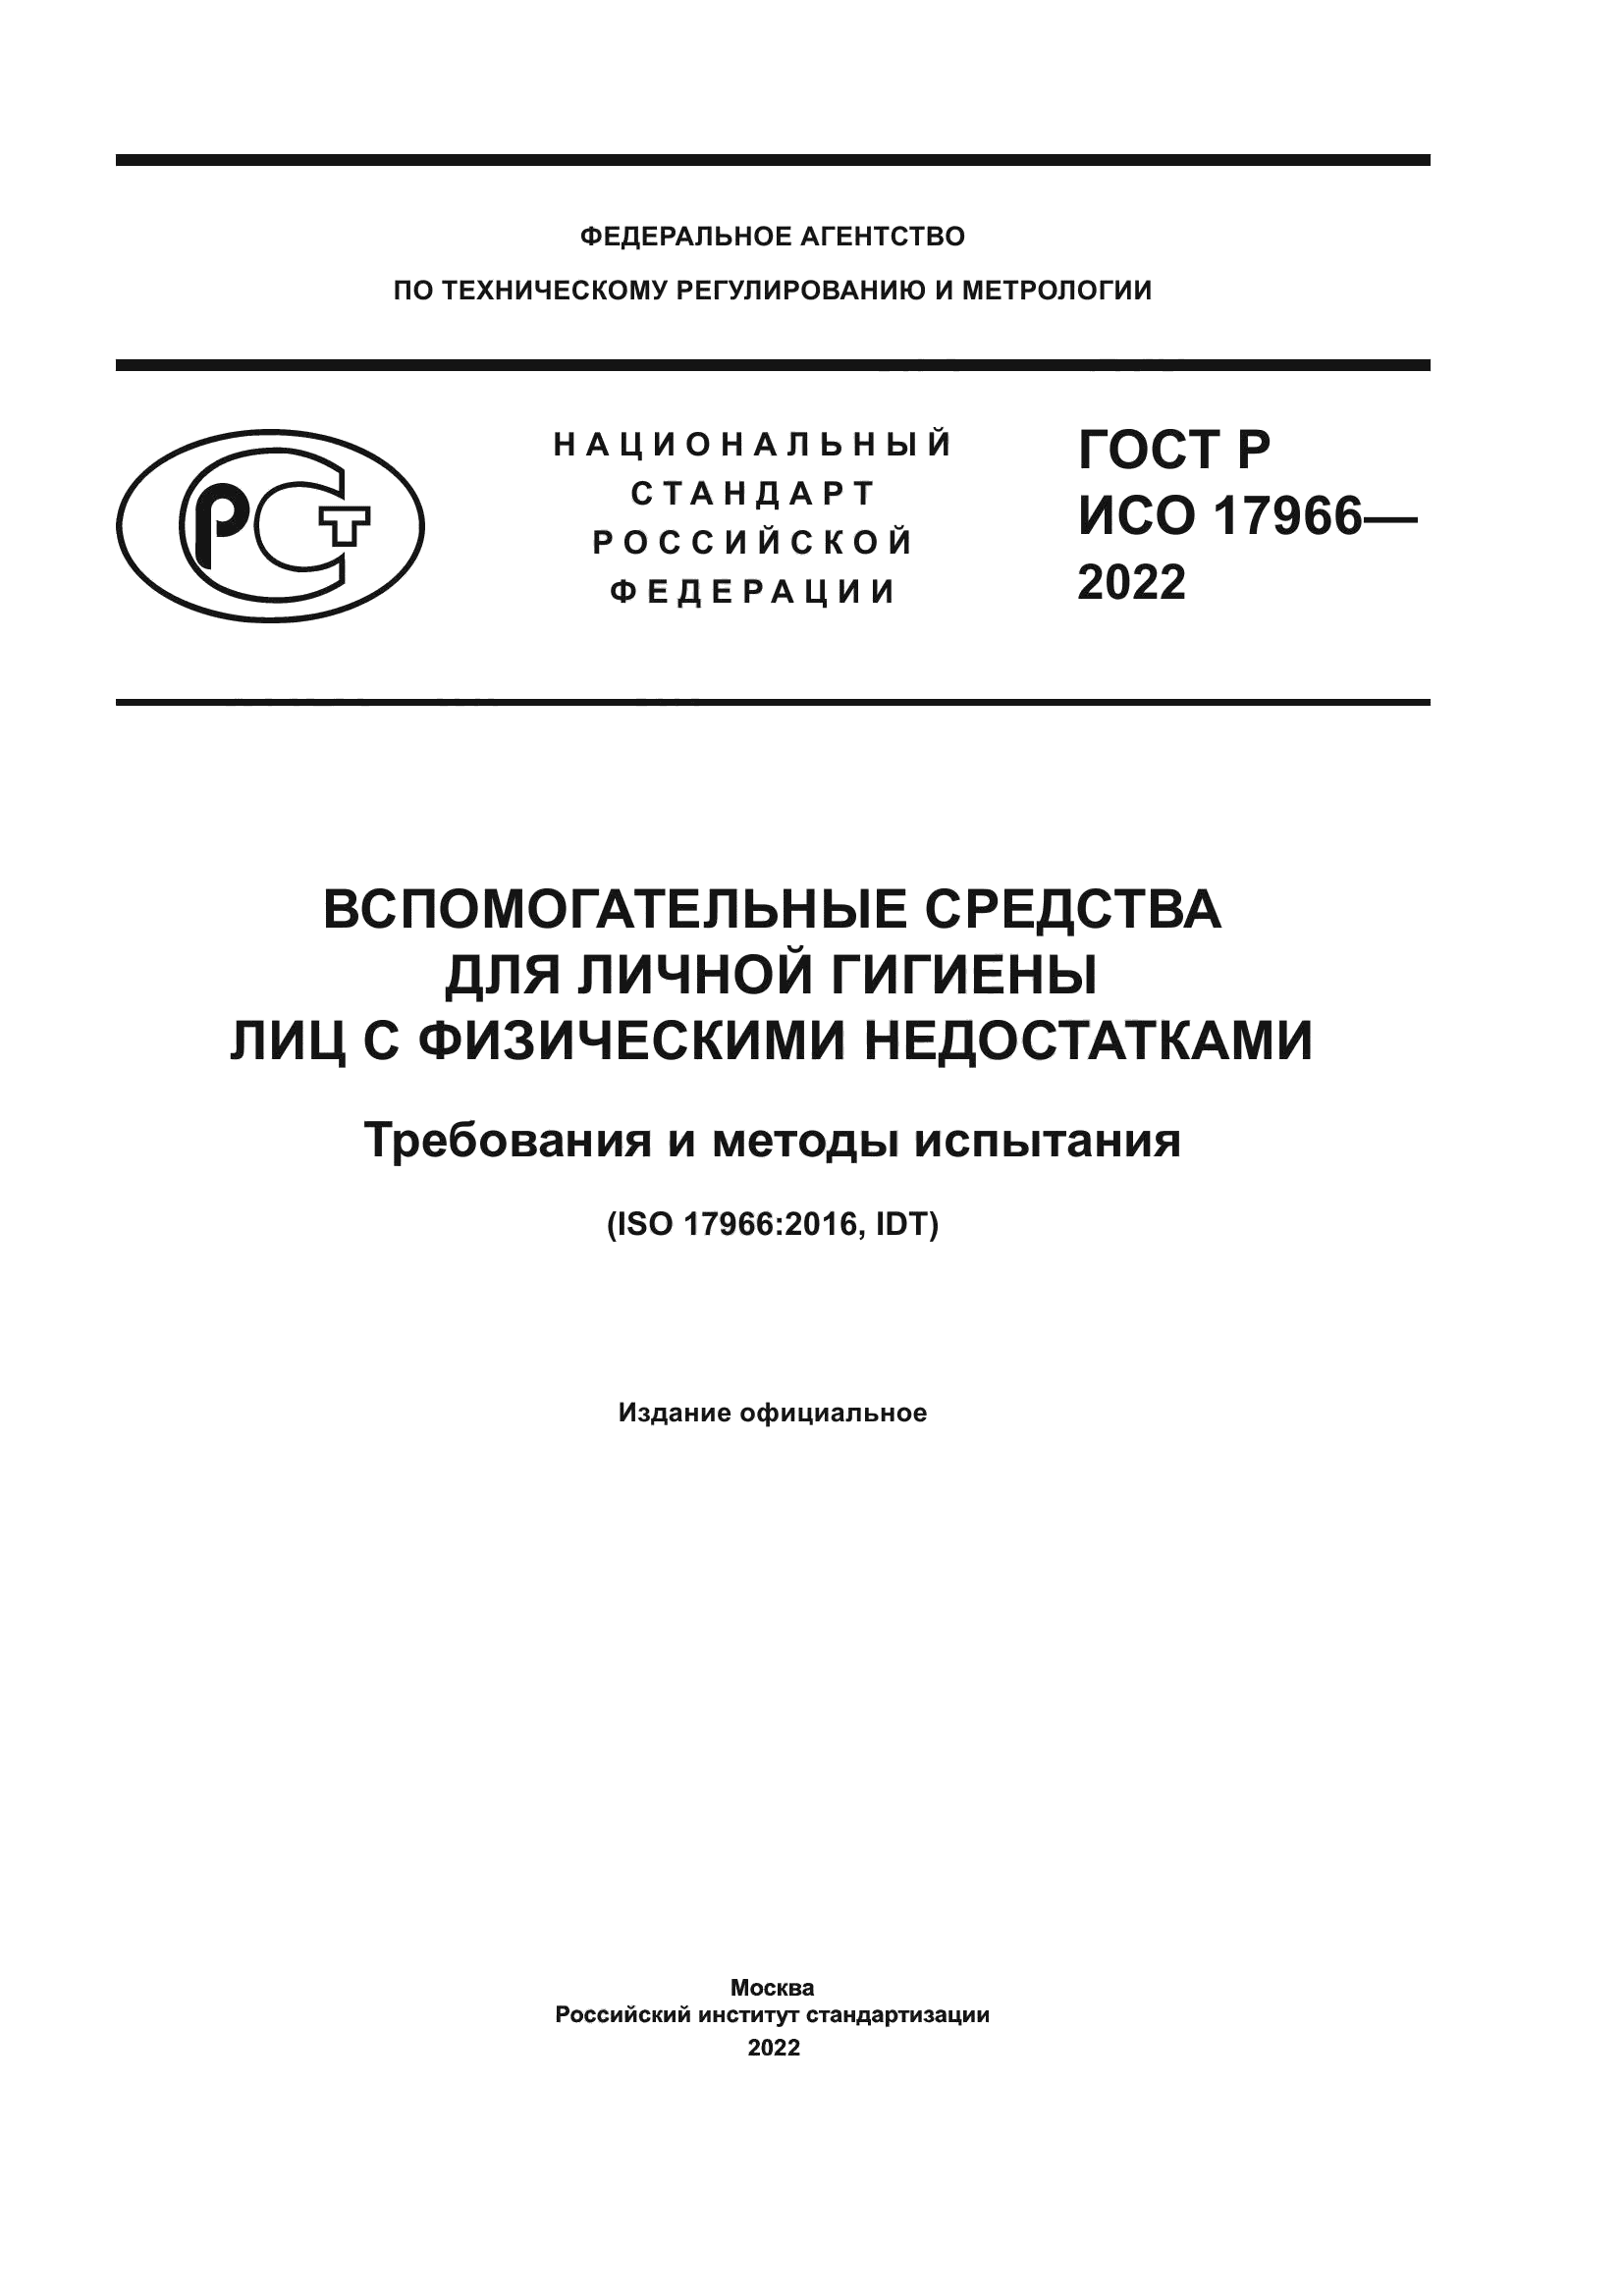 ГОСТ Р ИСО 17966-2022